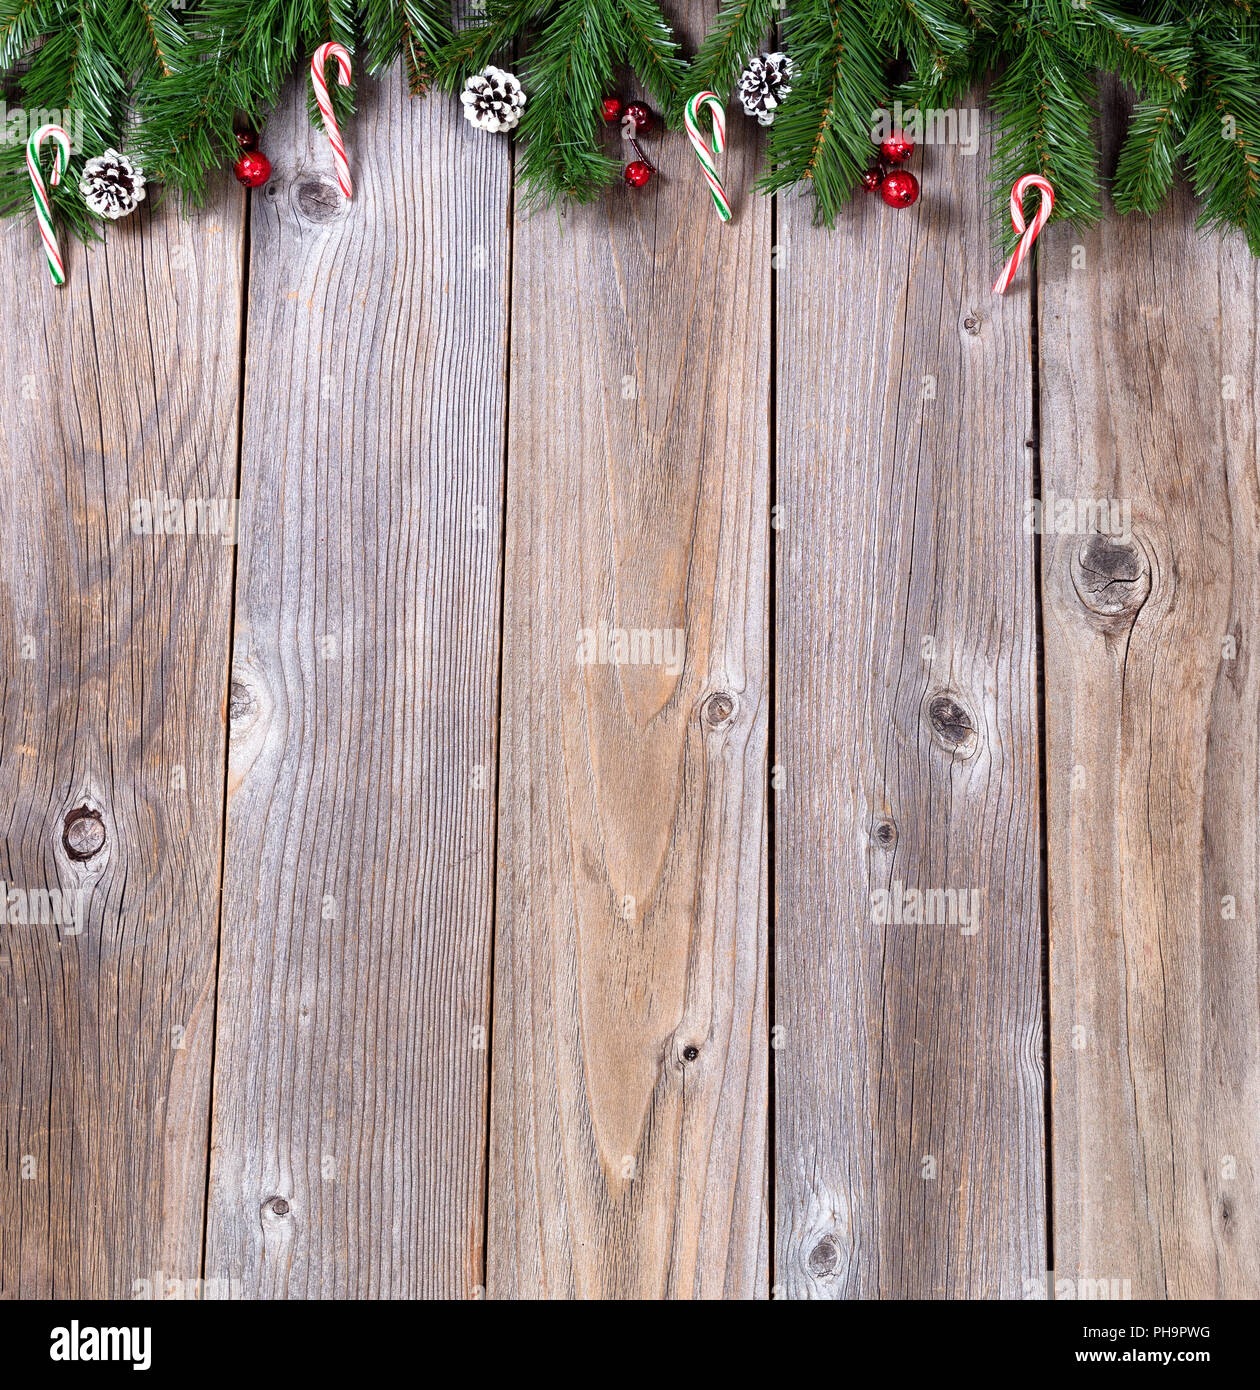 Panneaux en bois rustique avec des branches de sapin pour Noël concept Banque D'Images